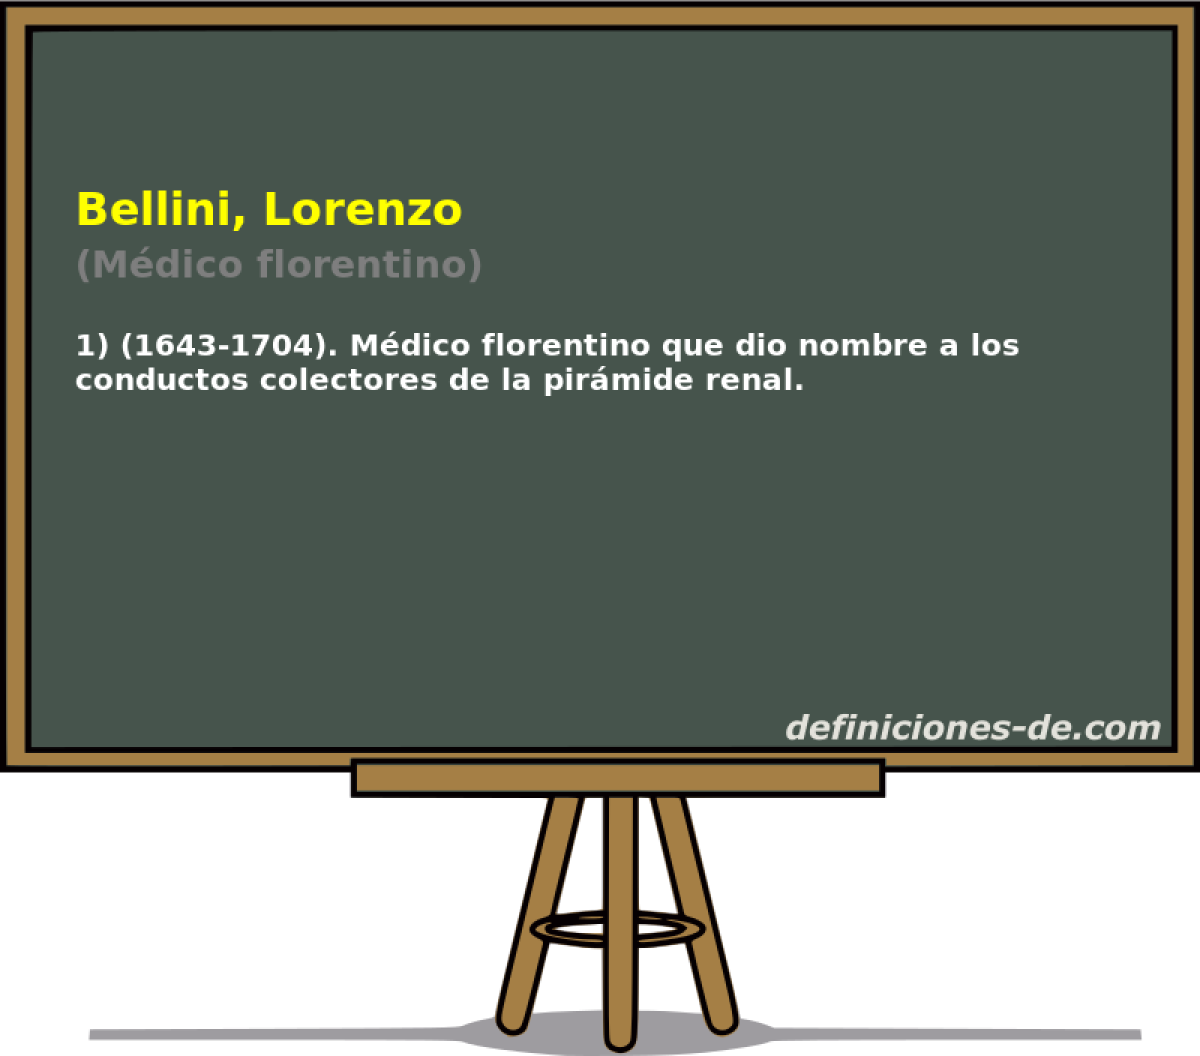 Bellini, Lorenzo (Mdico florentino)